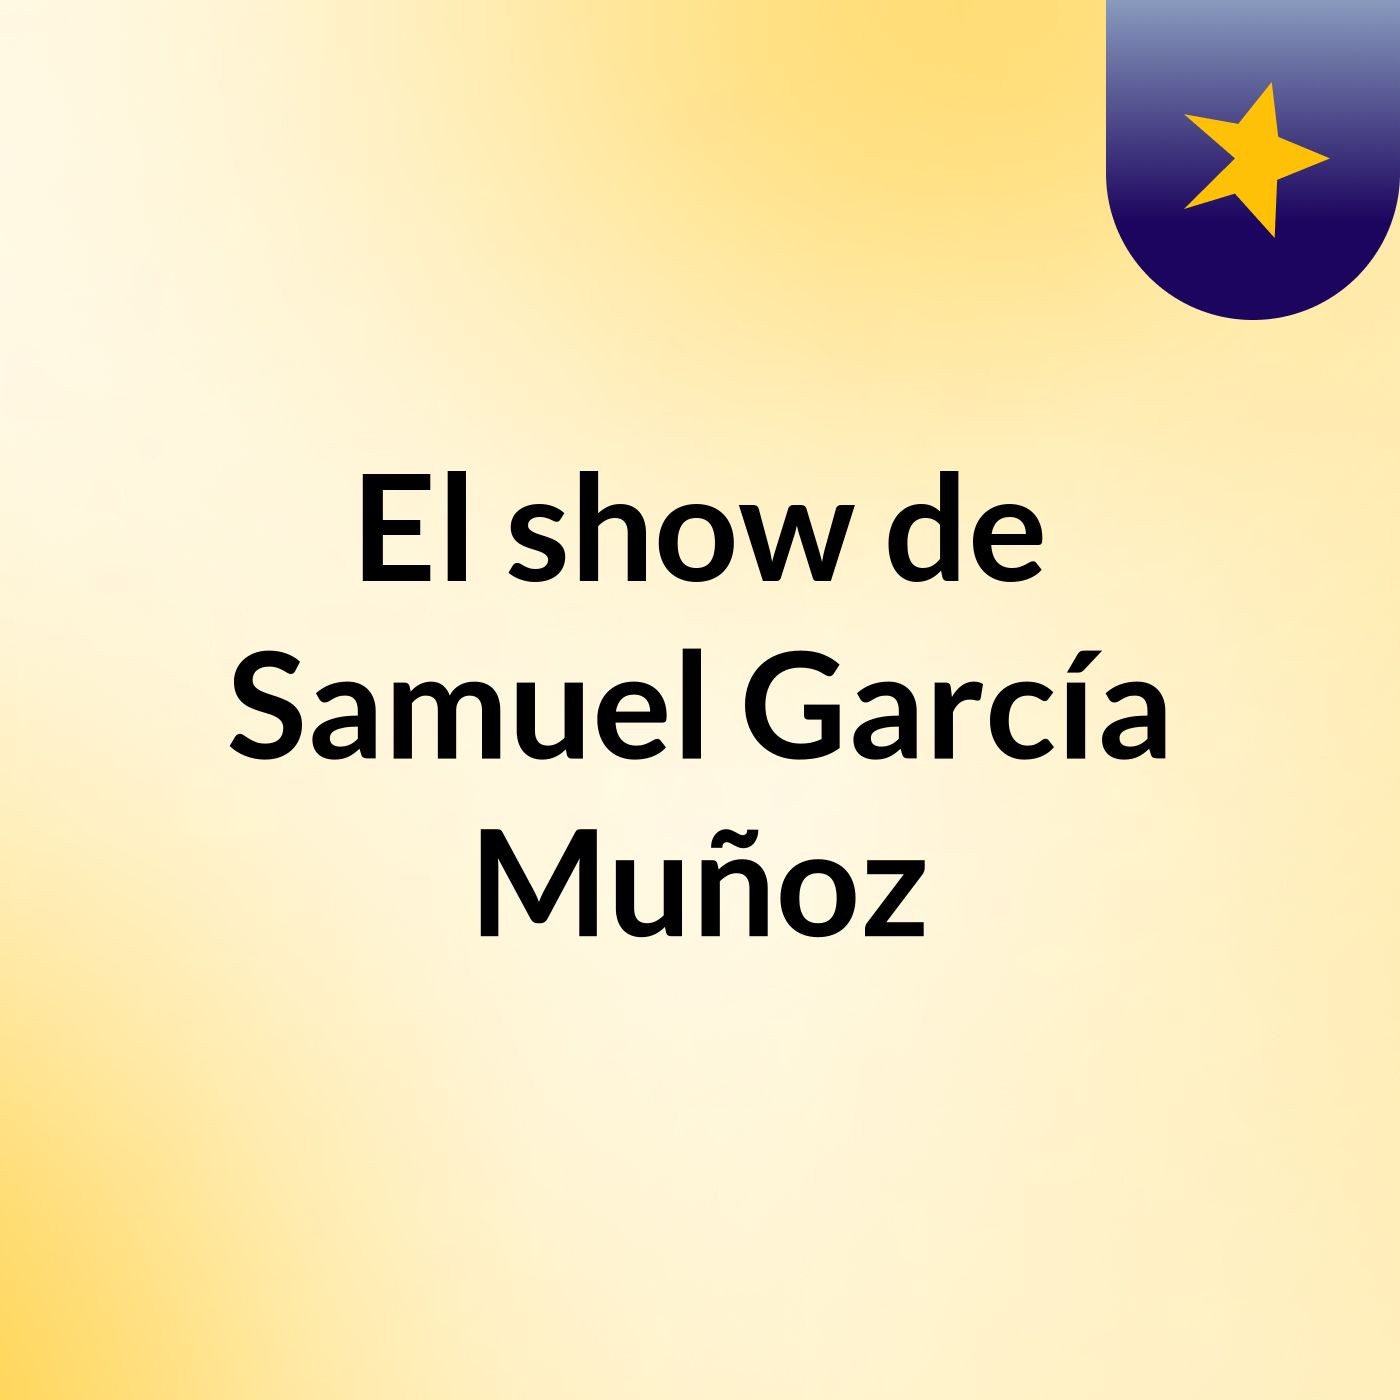 El show de Samuel García Muñoz